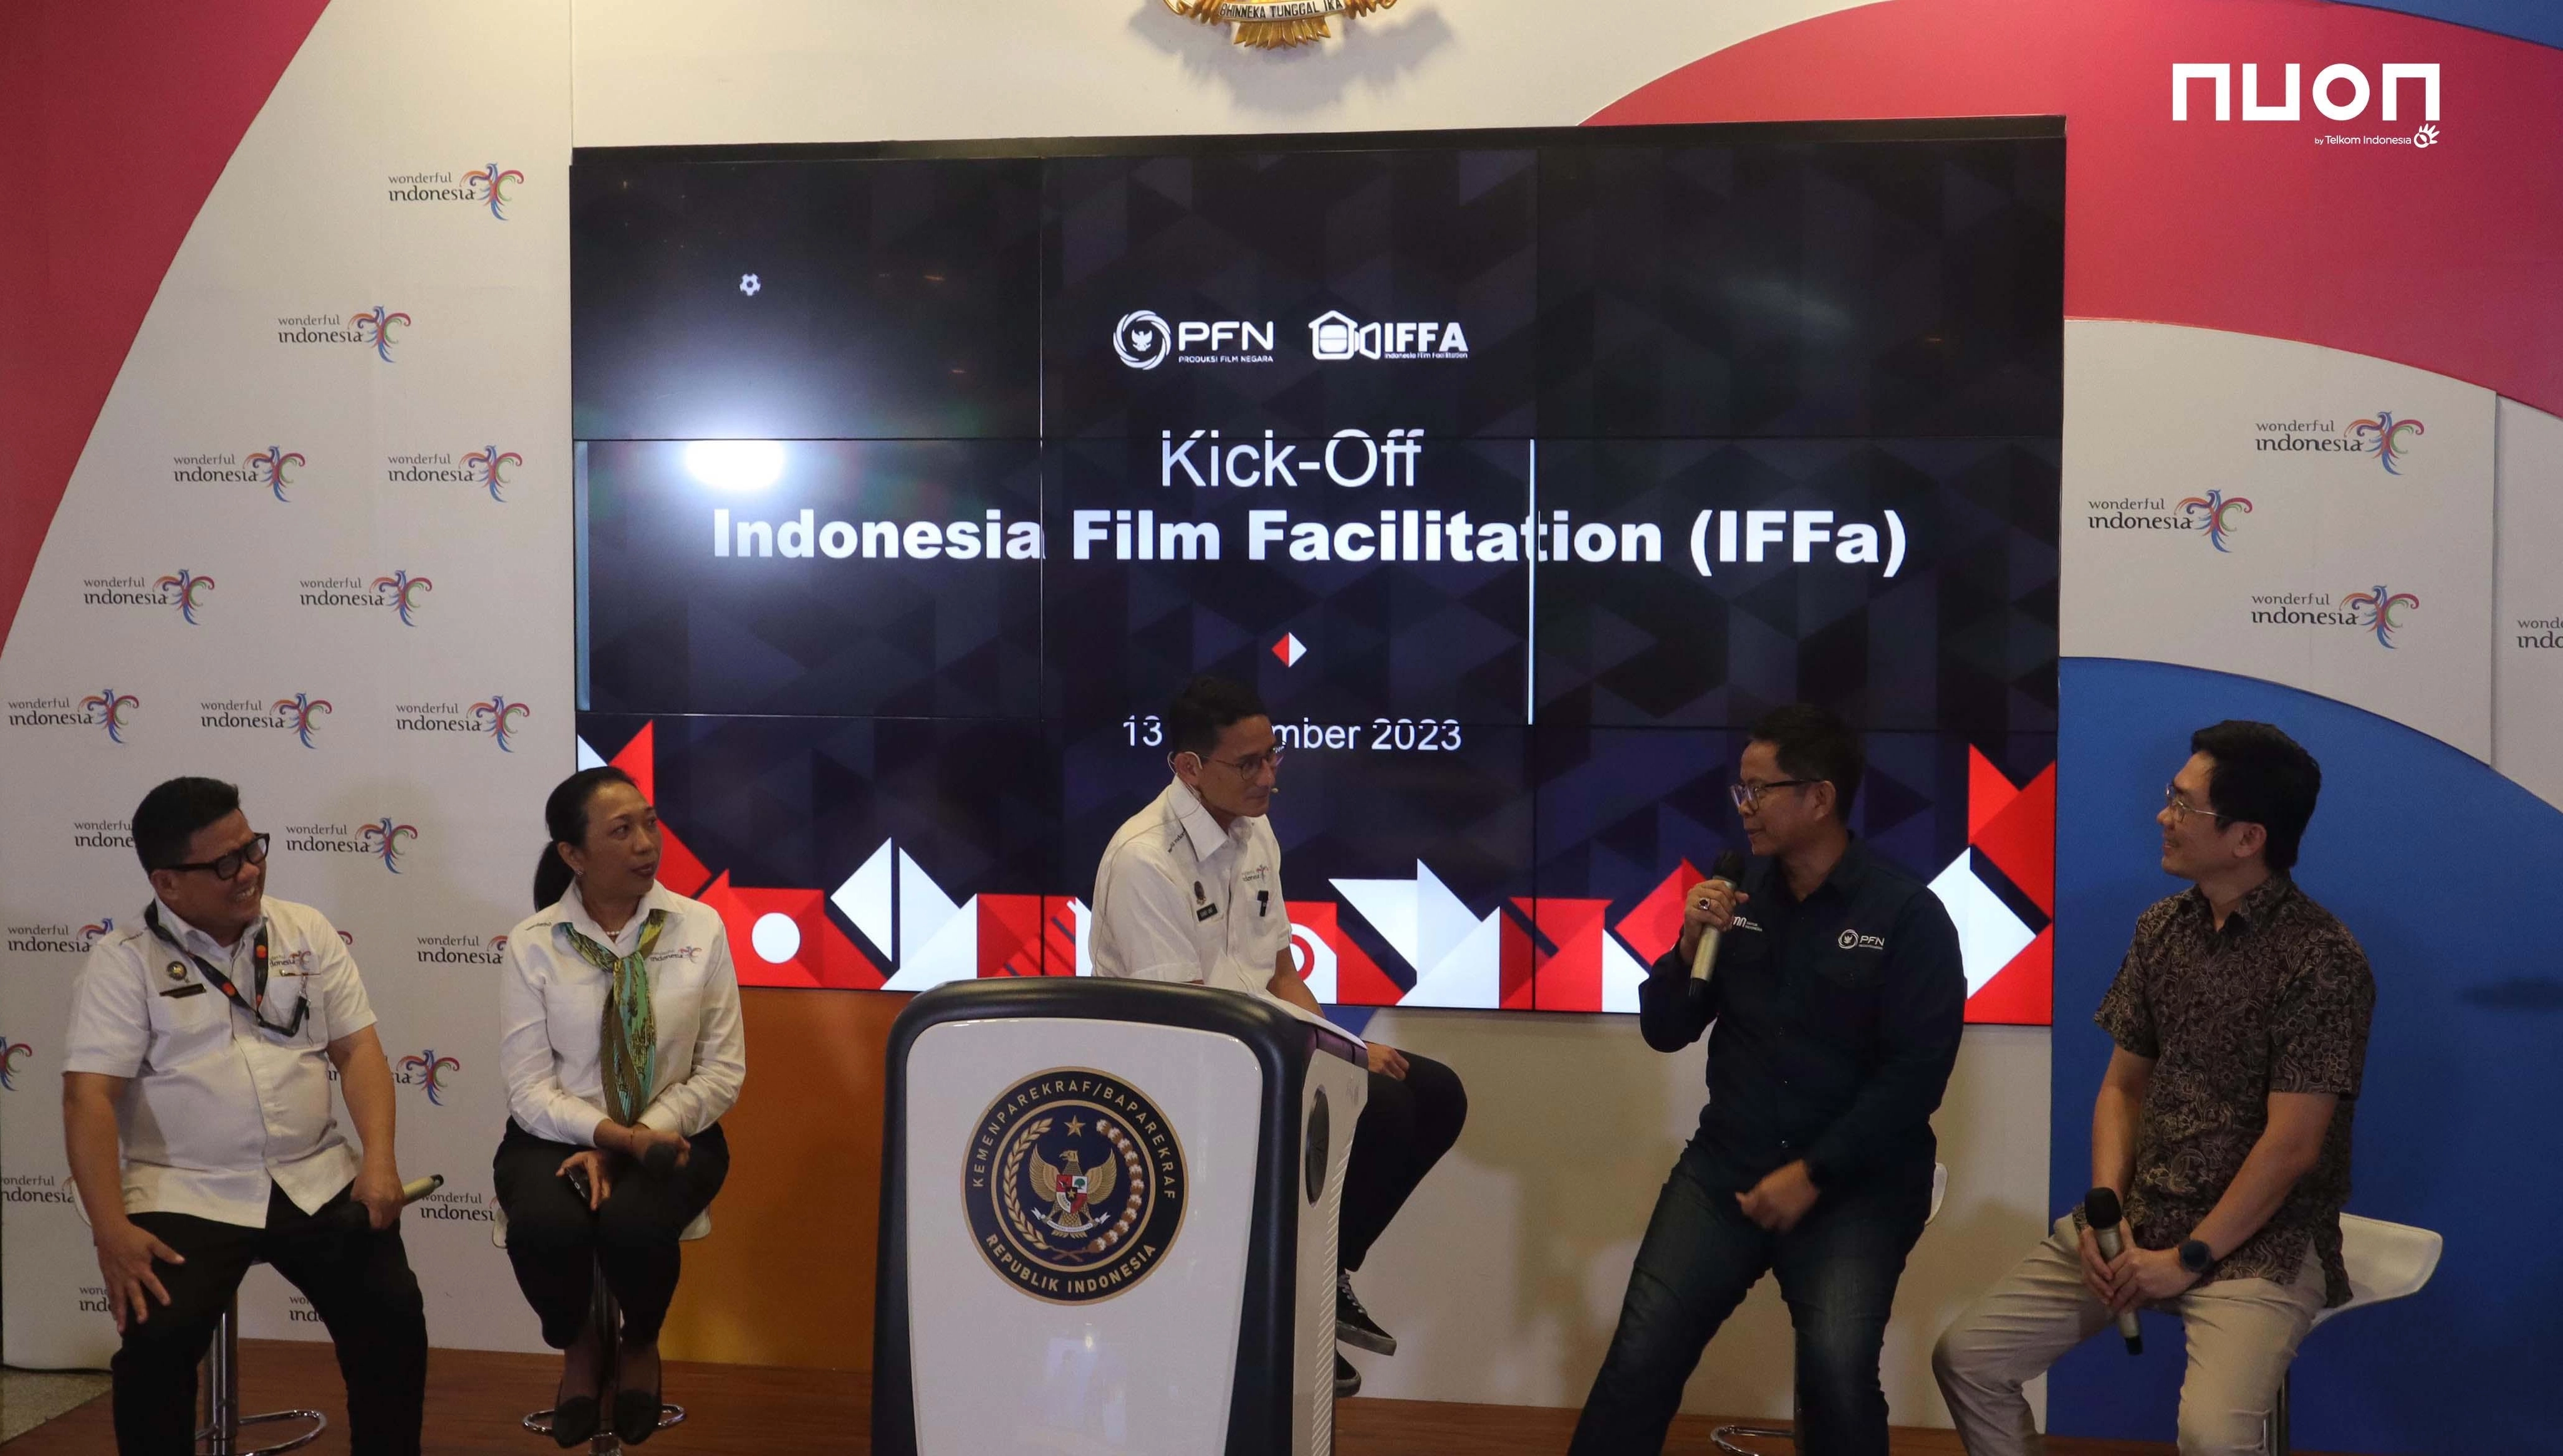 Nuon dan PFN Dukung Geliat Perfilman Indonesia melalui IFFa